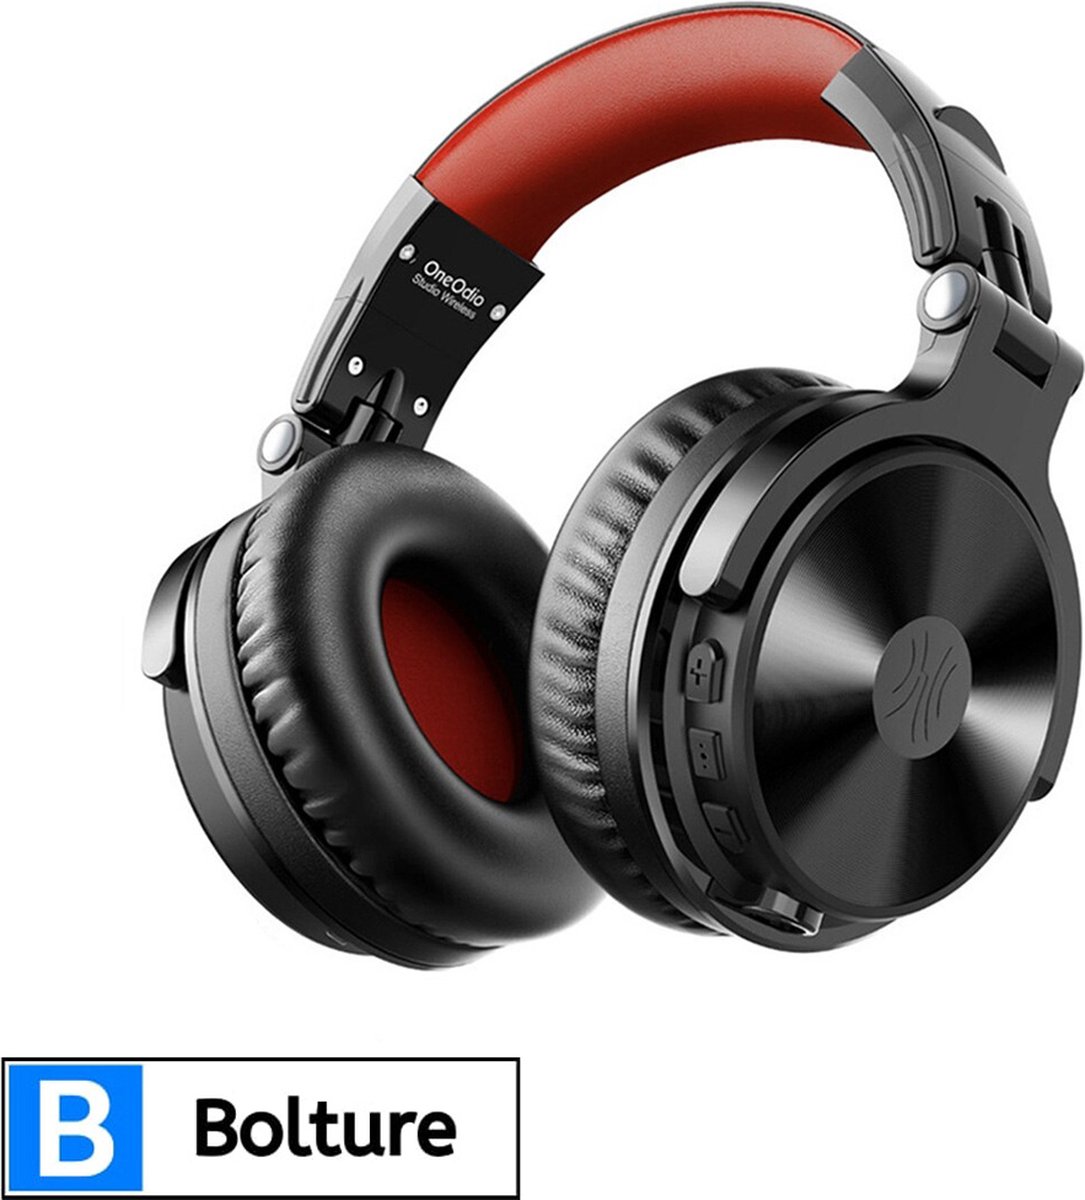 Bolture Koptelefoon met Draad - Hoofdtelefoon met Kabel voor Muziek - Headset met Microfoon - DJ - Studio - 110 uur speeltijd